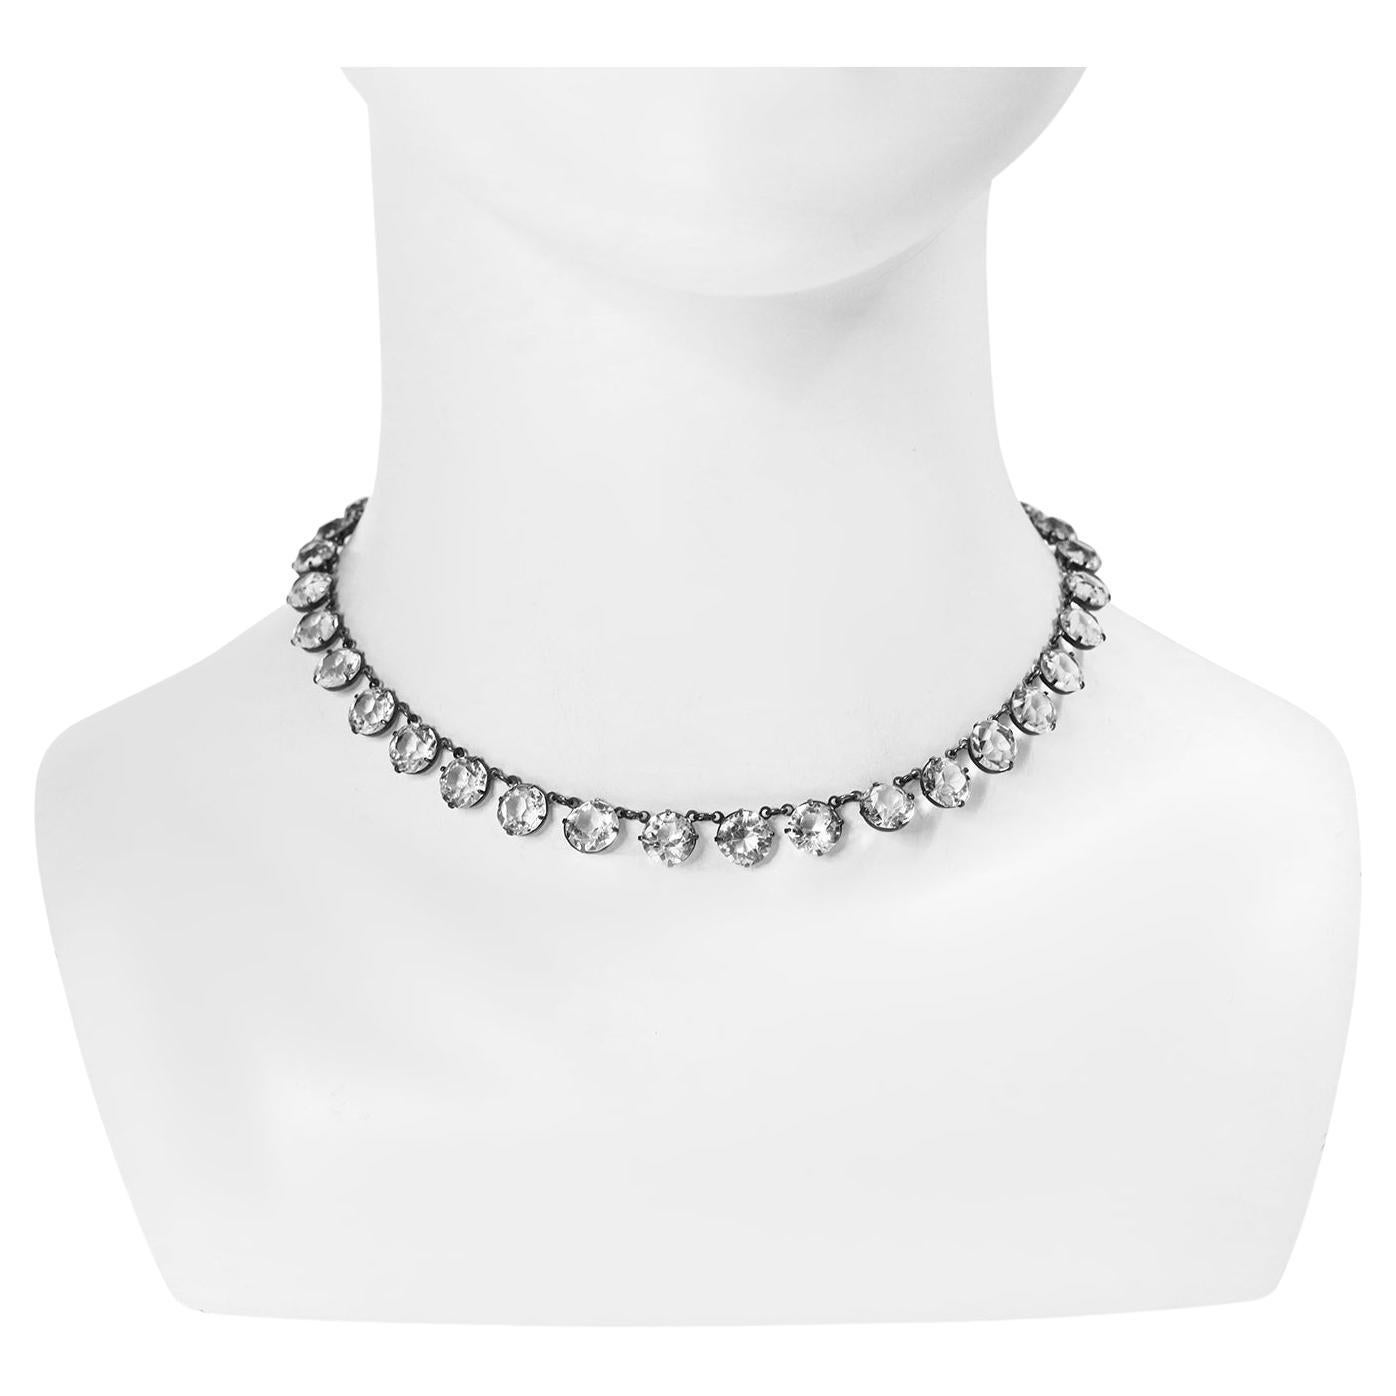 Vintage Sterling Open Back Crystal Choker Halskette CIRCA 1920's.  Gleiche Größe rund um den Hals.  Nichts sieht so gut aus wie eine echte Kristall-Halskette mit offenem Rücken. Der Glanz und die Schönheit auf der Haut machen einem echten Stein